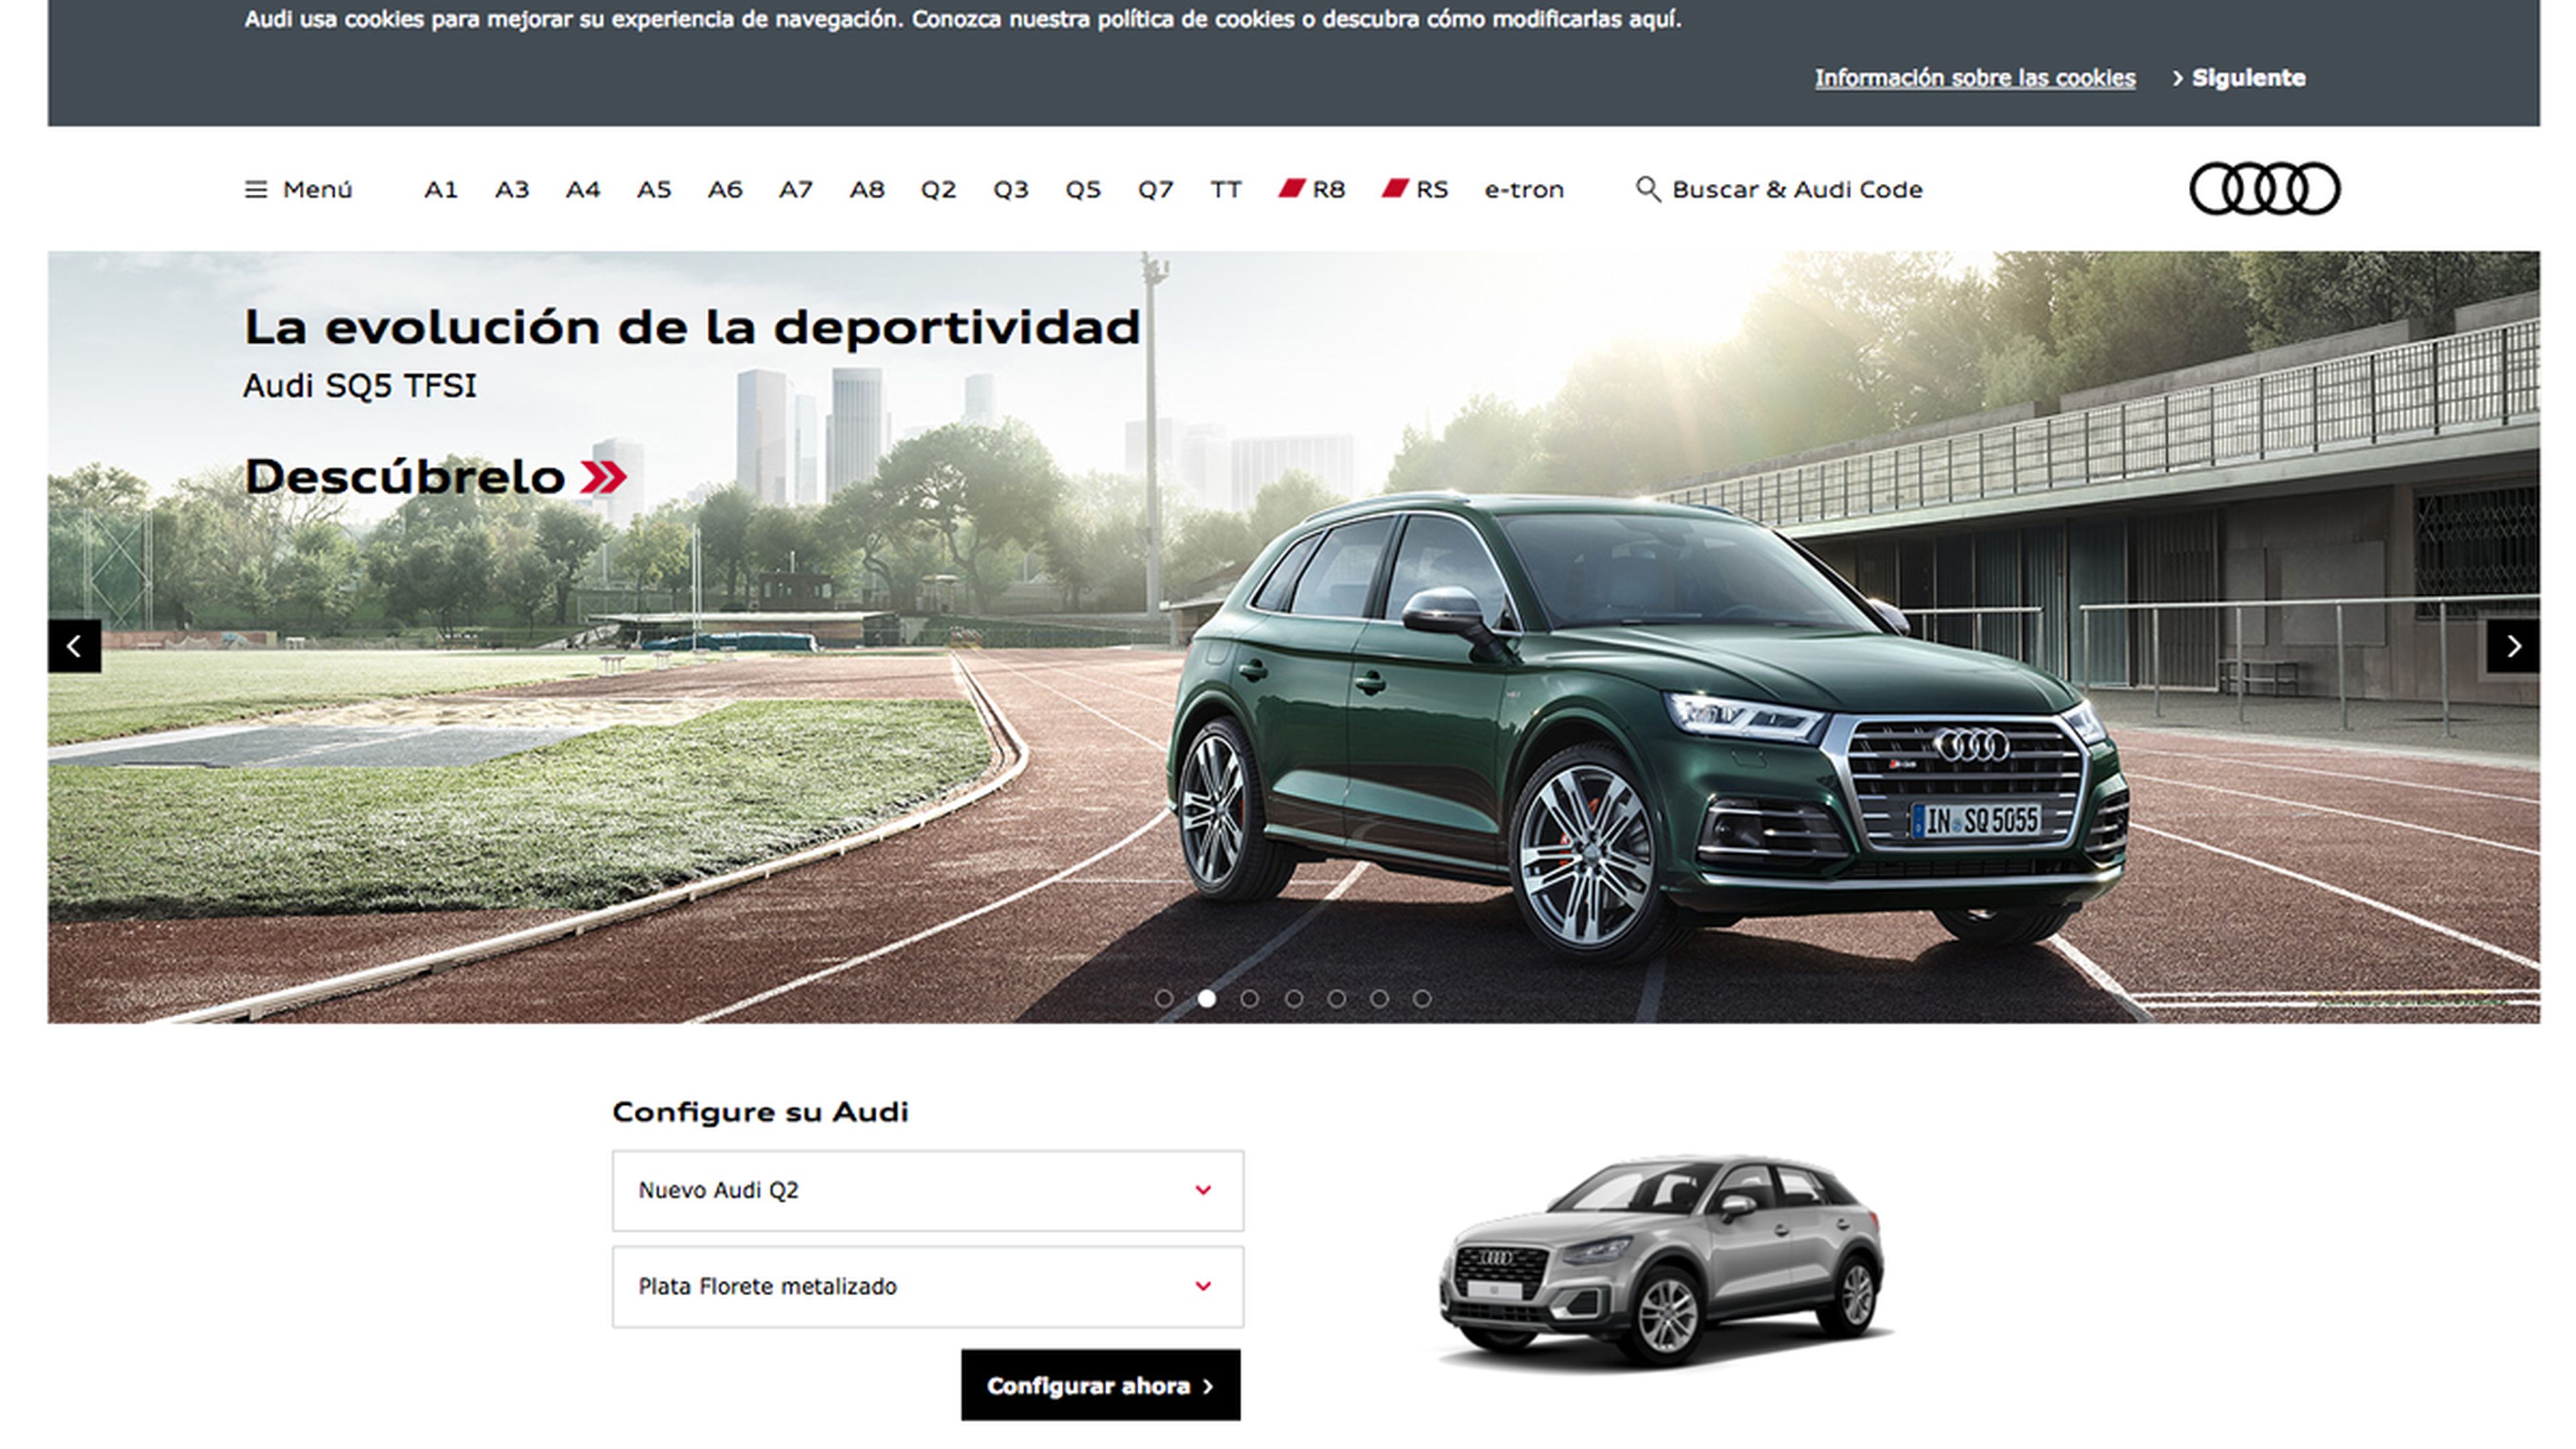 Entra en www.audi.es, donde está el configurador de Audi.